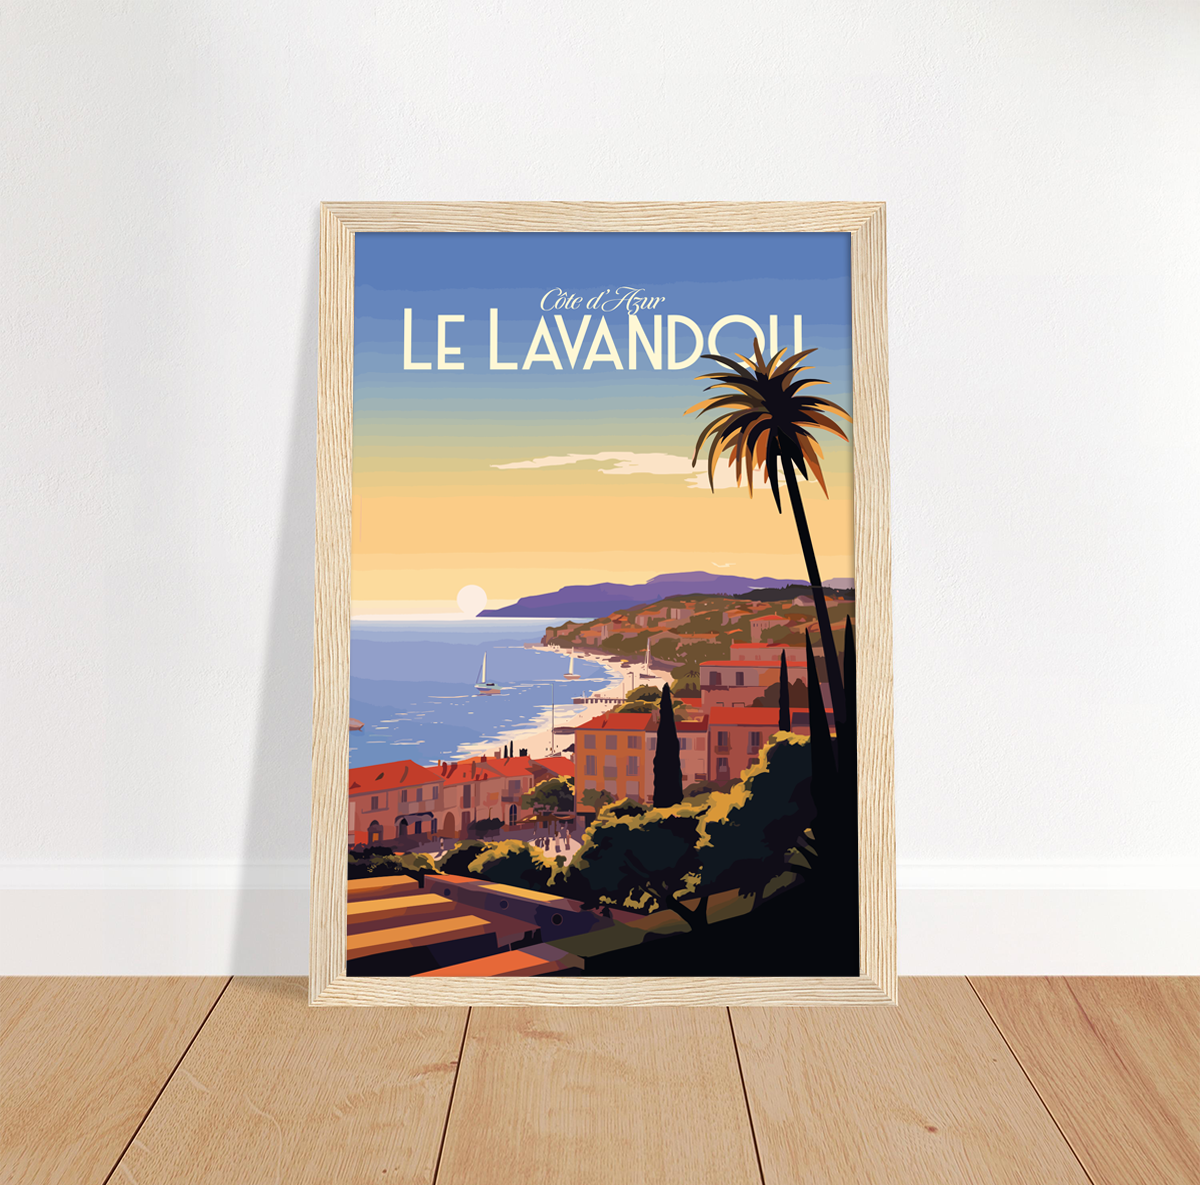 Le Lavandou poster by bon voyage design